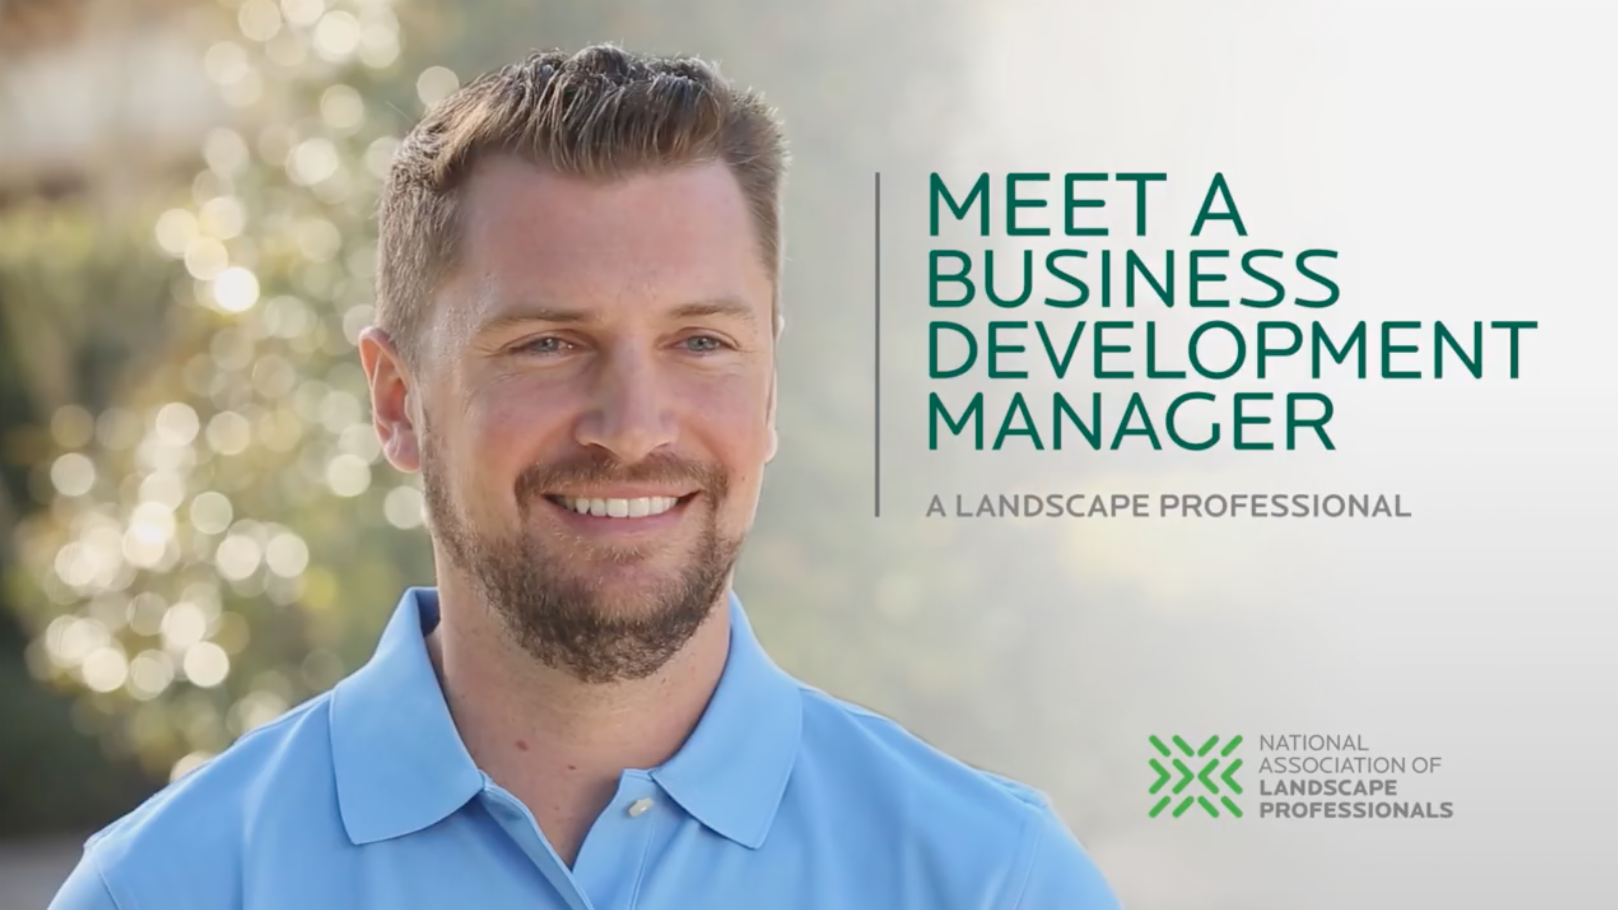 Meet a Business Development Manager - Landscape Industry Testimonial Videos